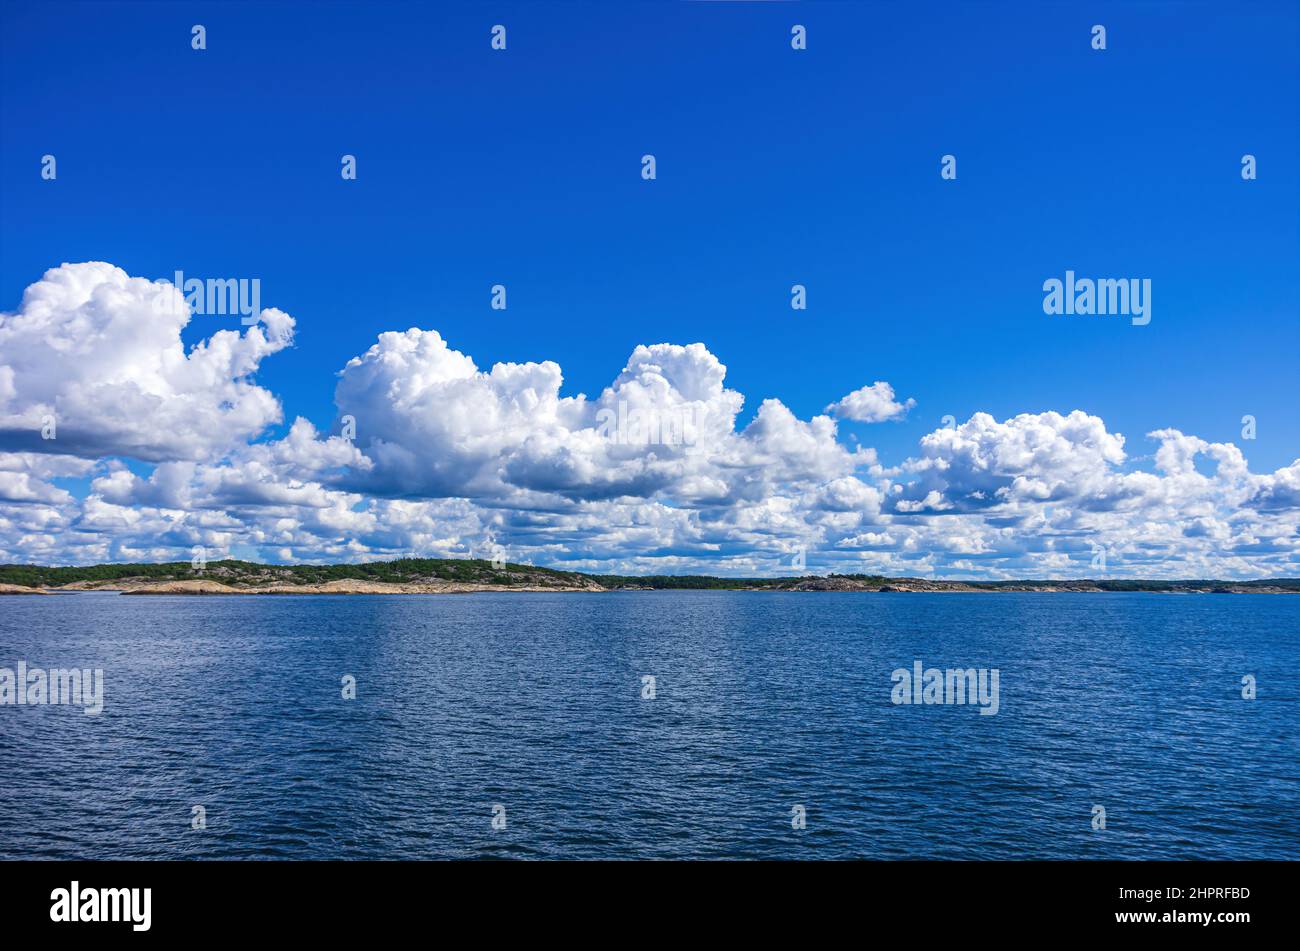 Skerries et le littoral sous un ciel bleu clair et nuageux dans le fjord de Koster entre les îles de Koster et Strömstad, Bohuslän, Suède. Banque D'Images